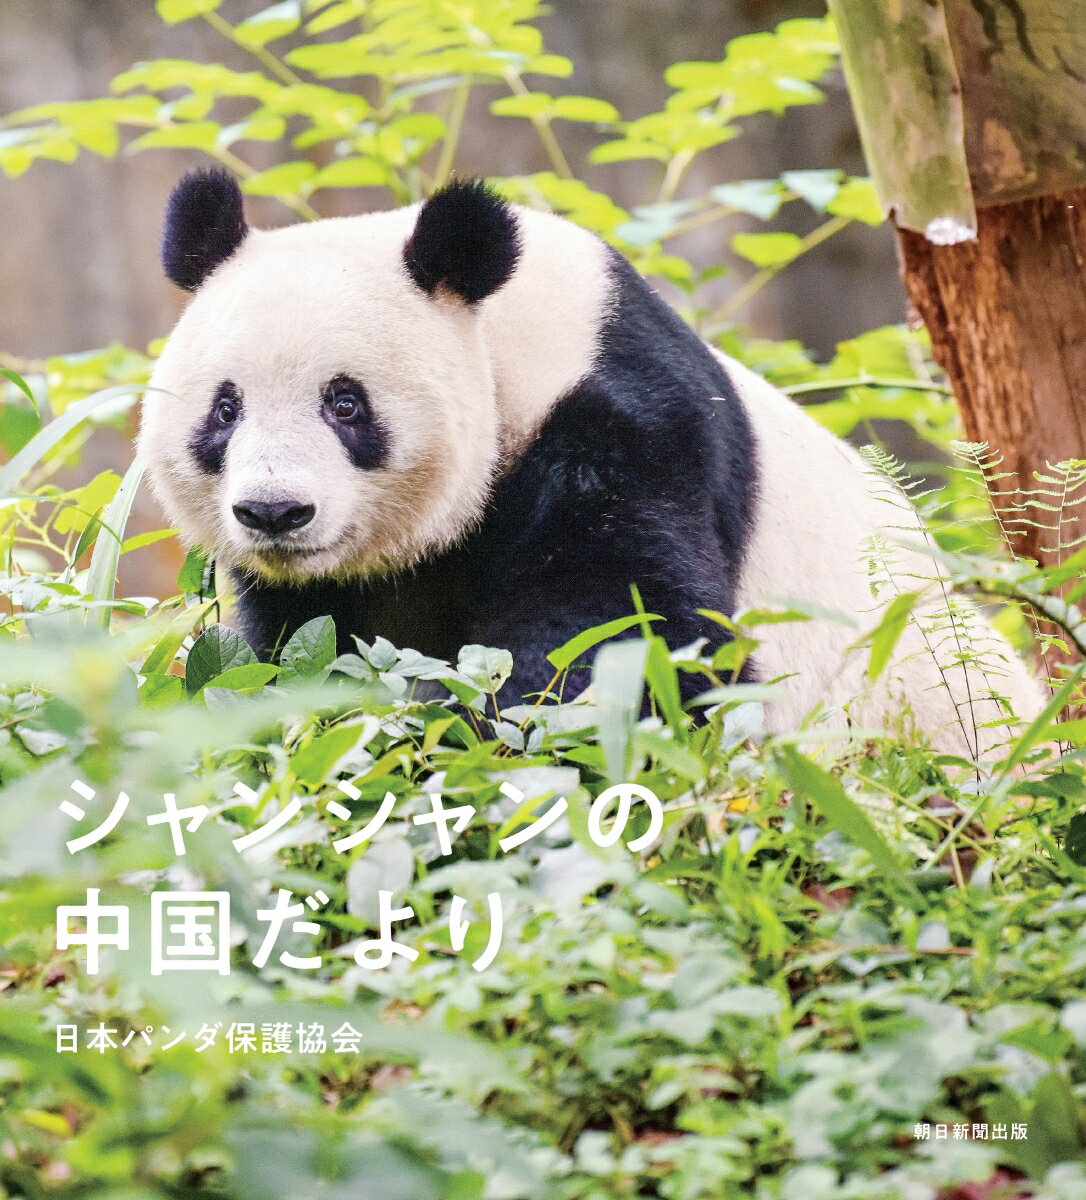 中国ジャイアントパンダ保護研究センターで撮影されたフォトブック。一般公開前の貴重な写真もたっぷり。